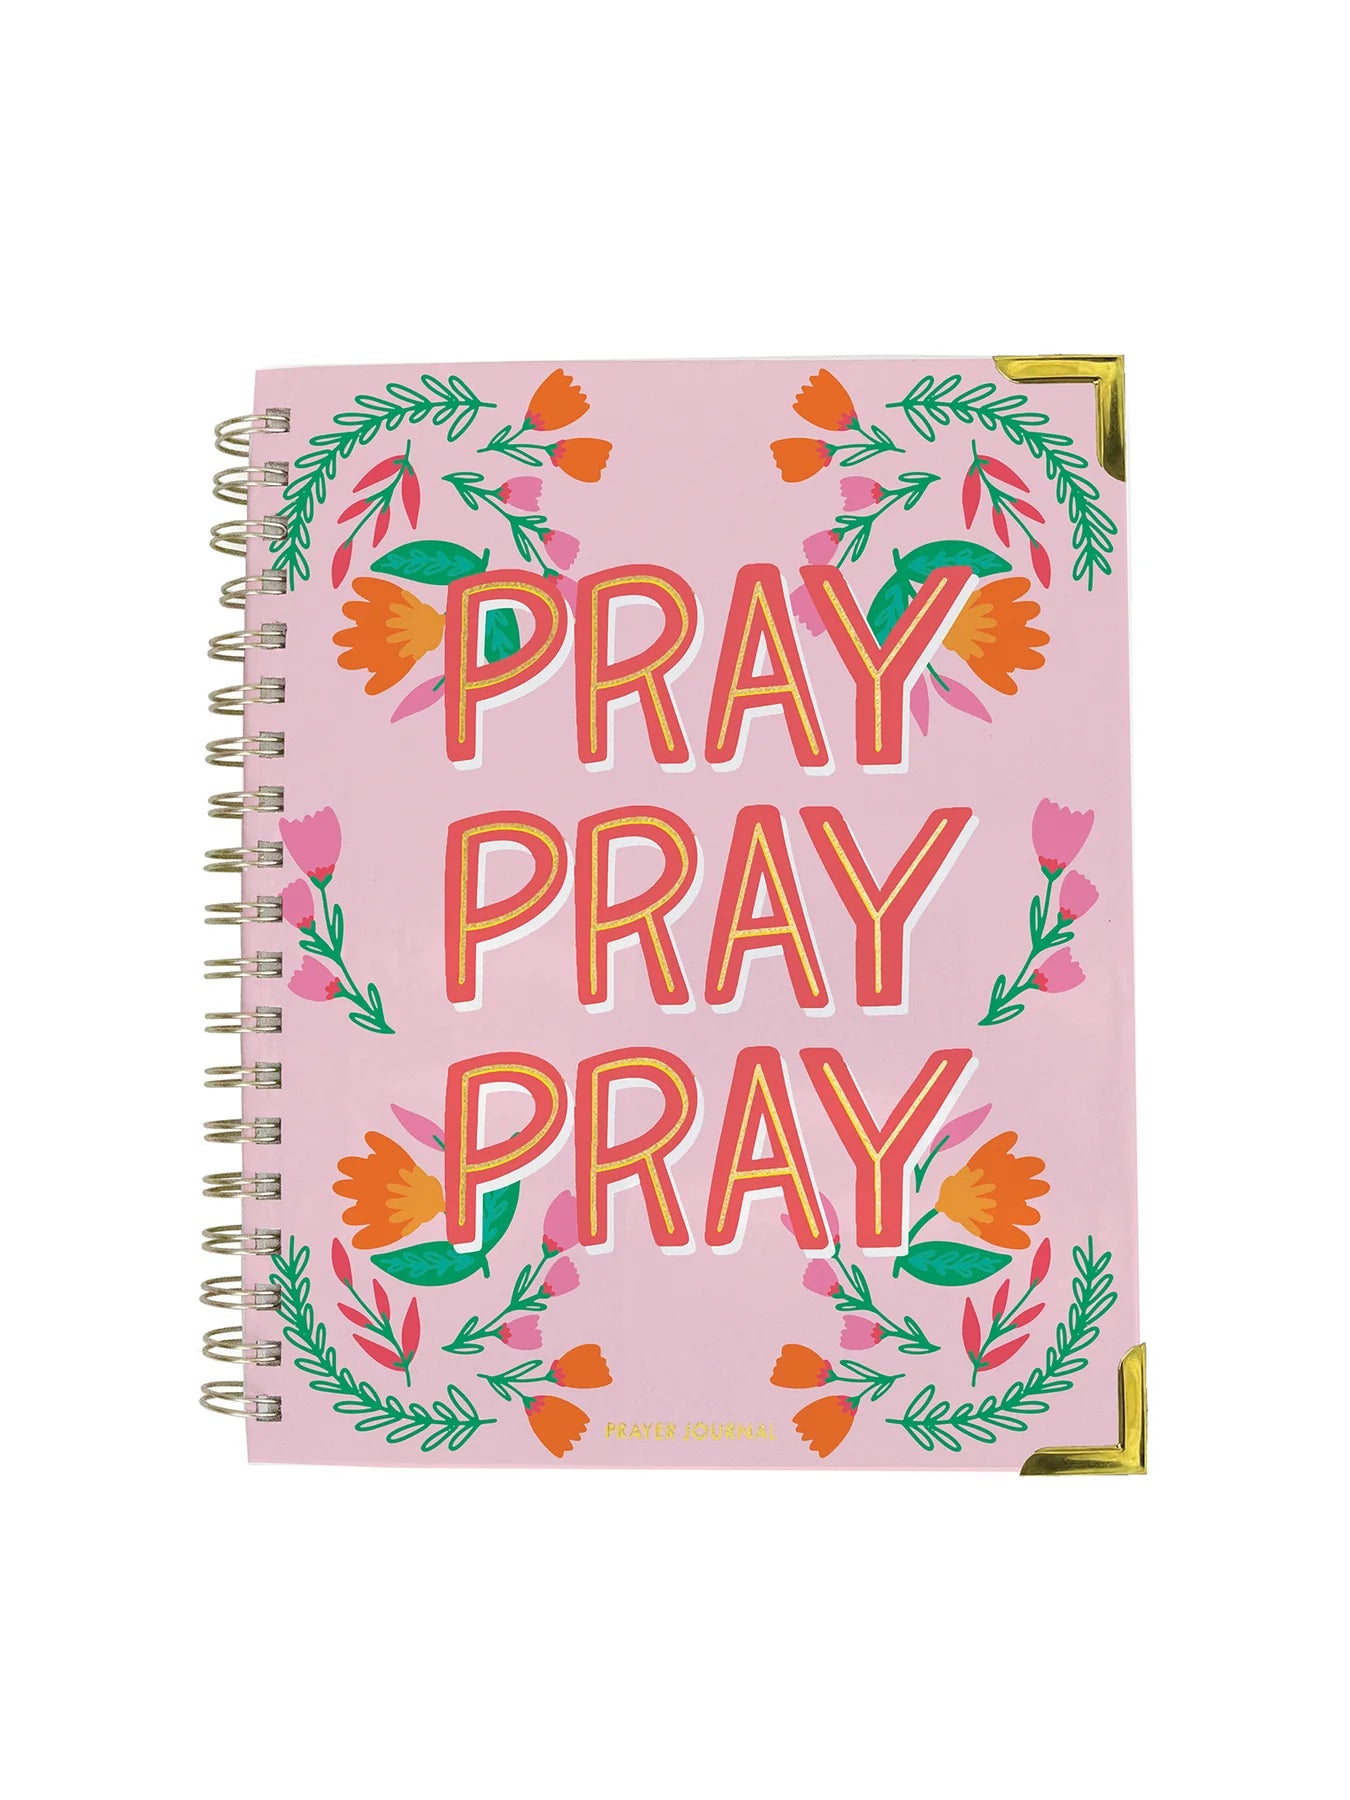 Mary Square Pray Pray Pray Journal